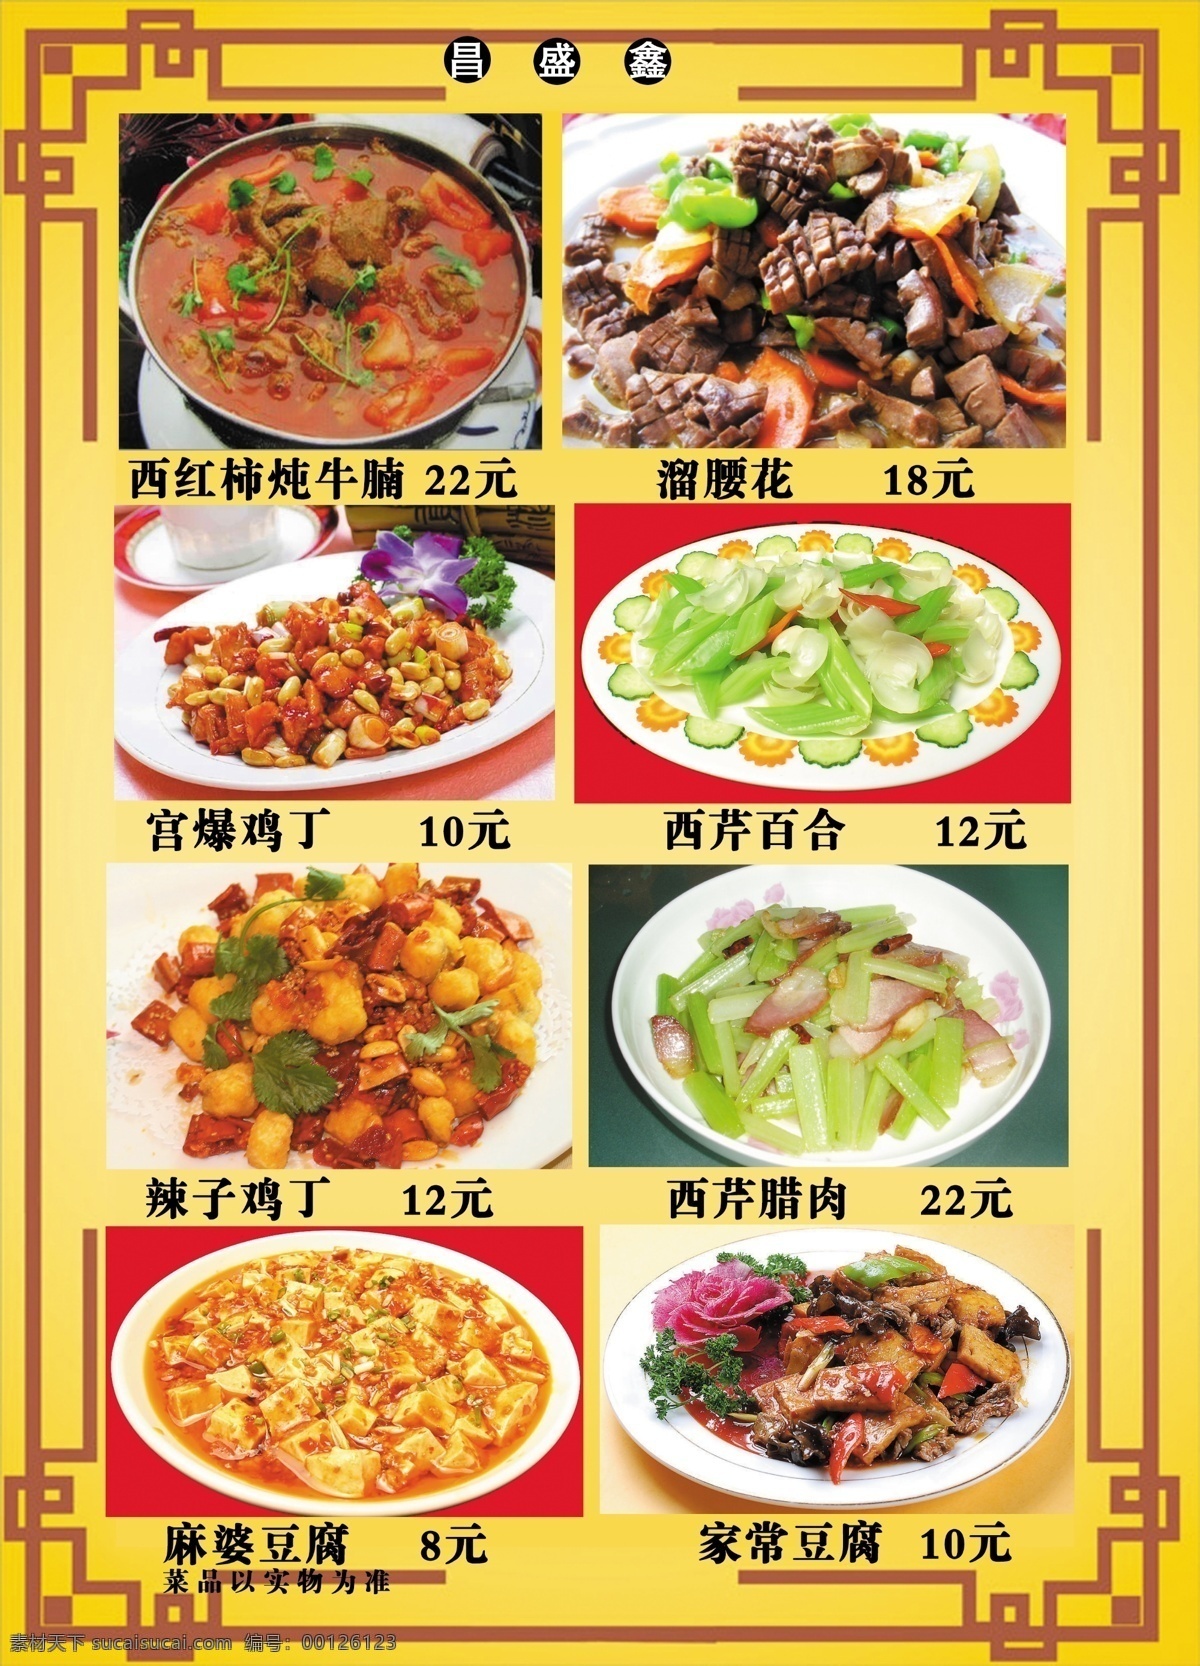 昌盛鑫菜谱8 食品餐饮 菜单菜谱 分层psd 平面广告 海报 设计素材 平面模板 psd源文件 黄色